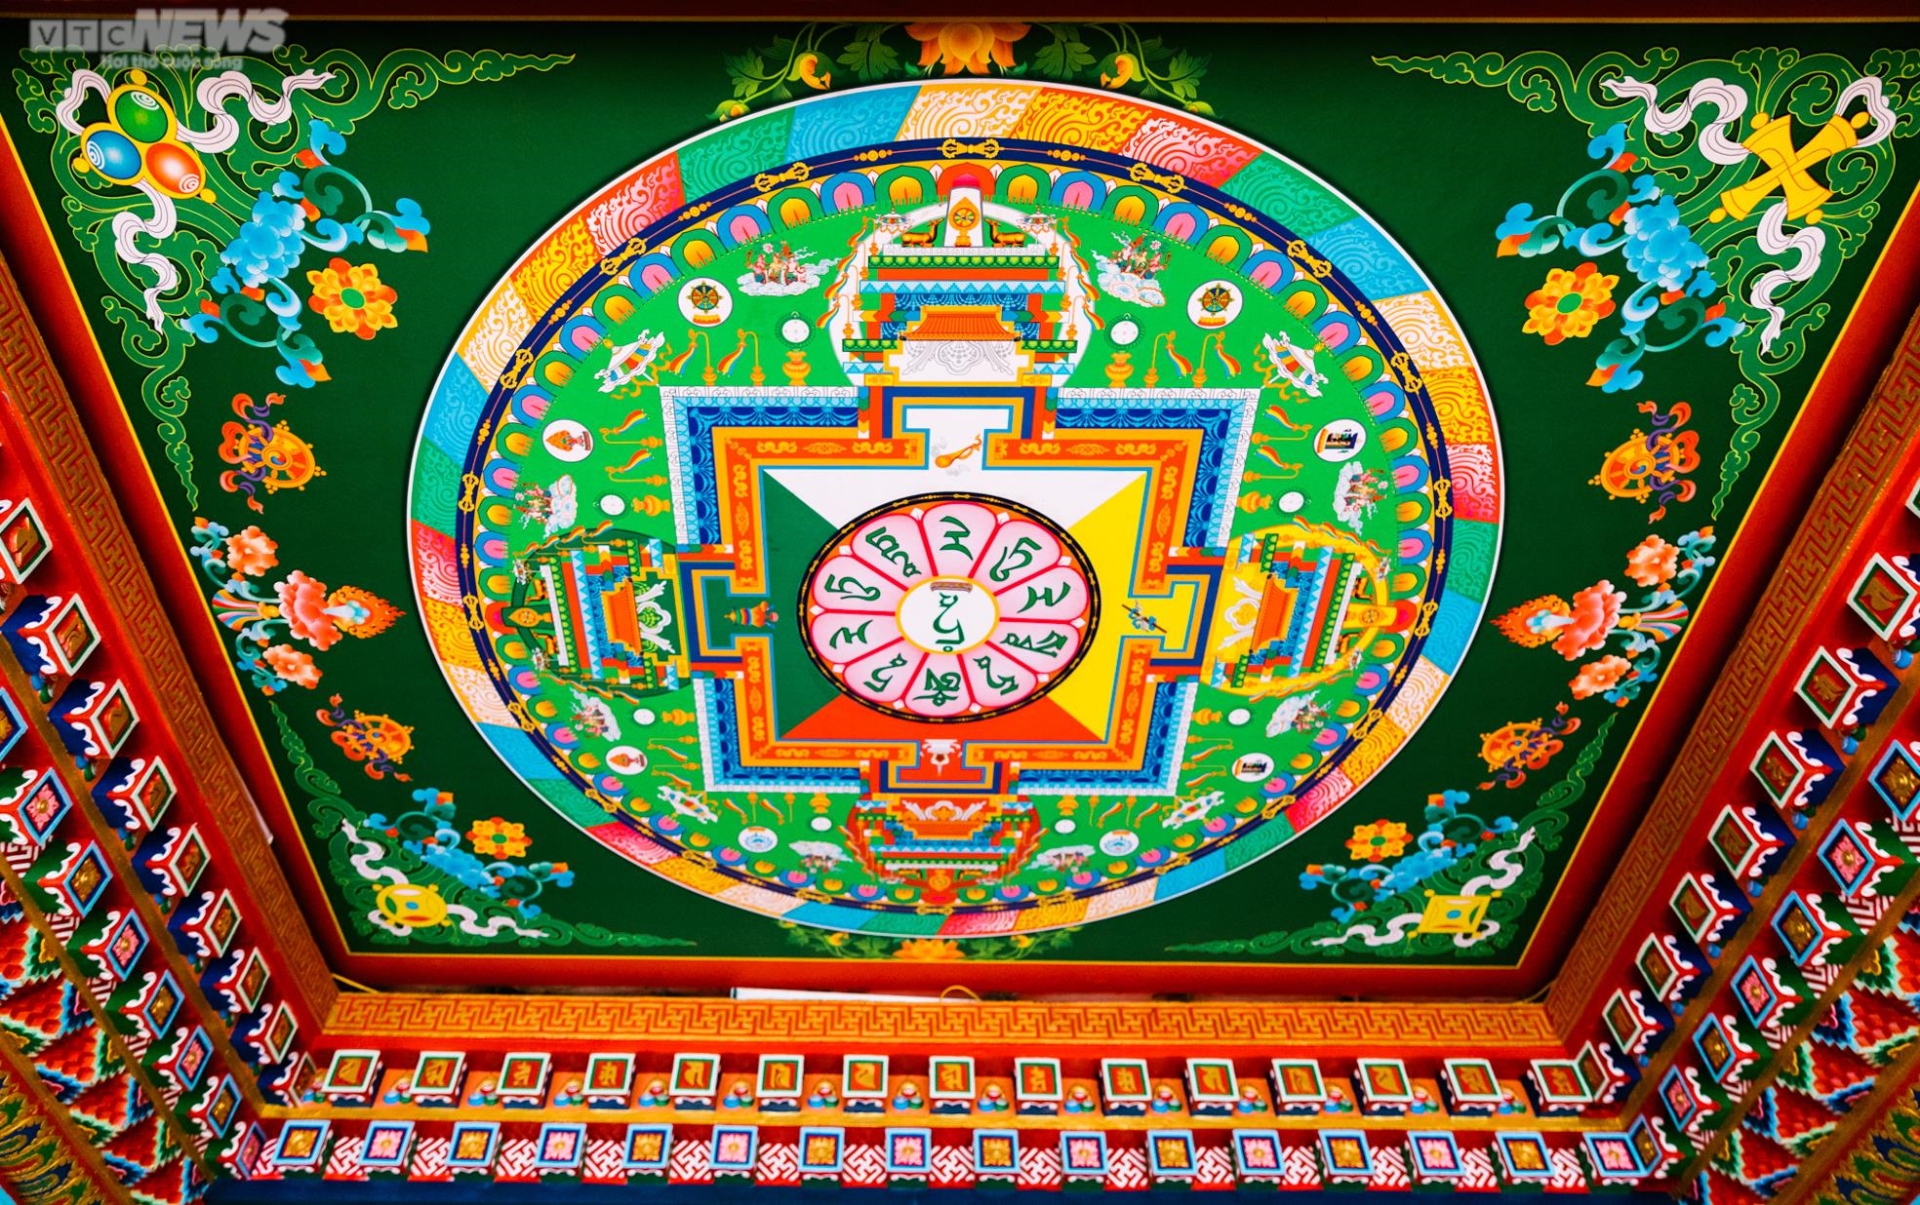 Chiêm ngưỡng ngôi chùa Tây Tạng 600 năm tuổi độc nhất tại Hà Nội - Ảnh 14.